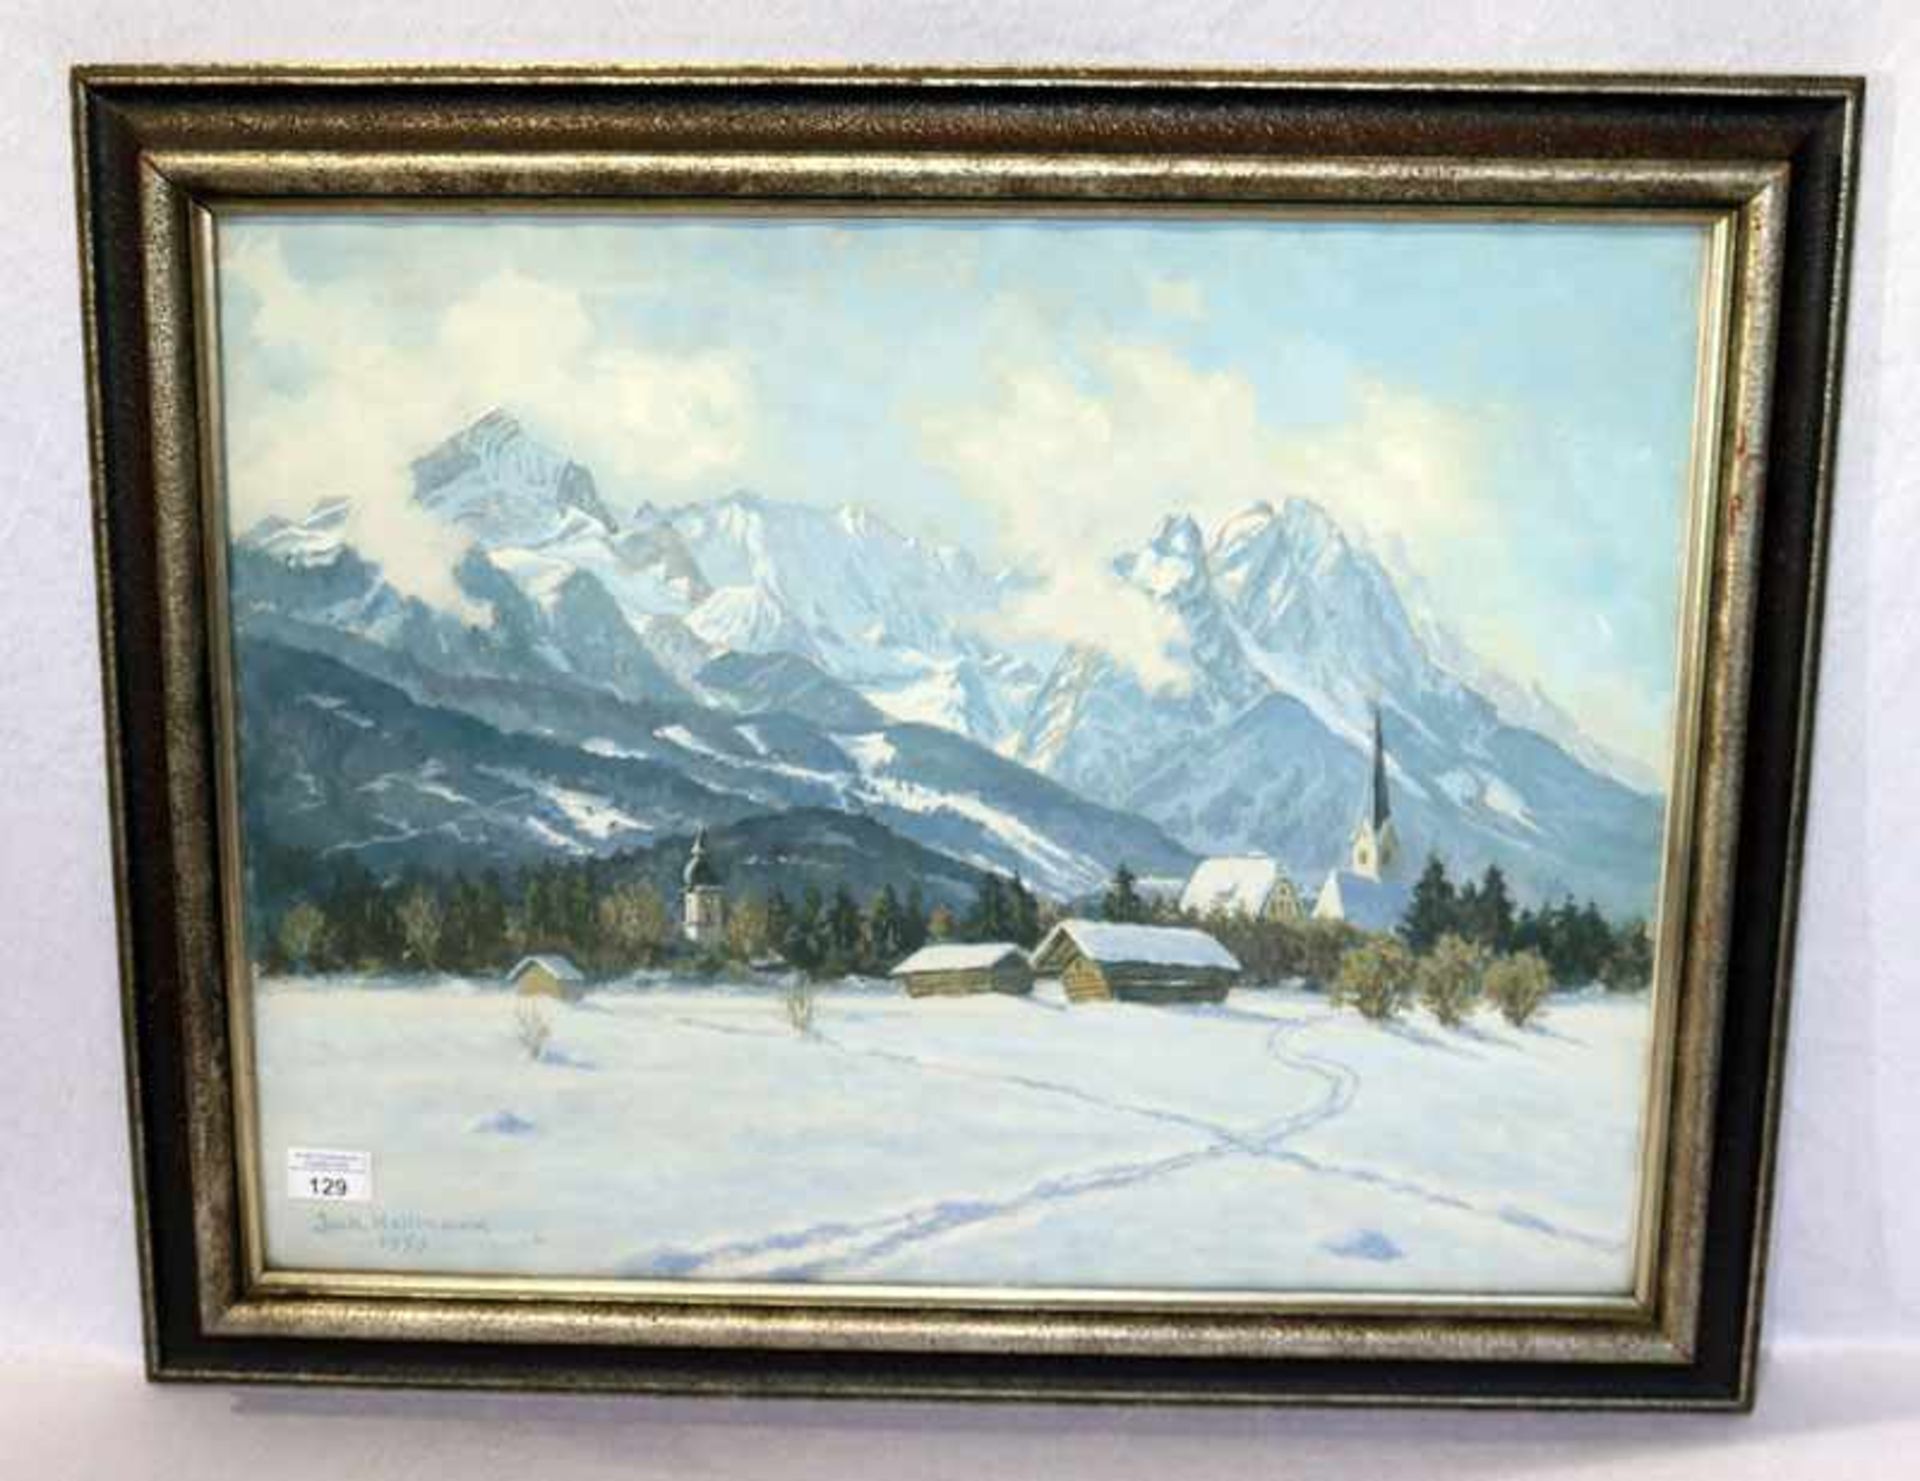 Gemälde Mischtechnik 'Wintertag in Garmisch', signiert Jakob Hellmann, datiert 1950, * 1877 Homburg/